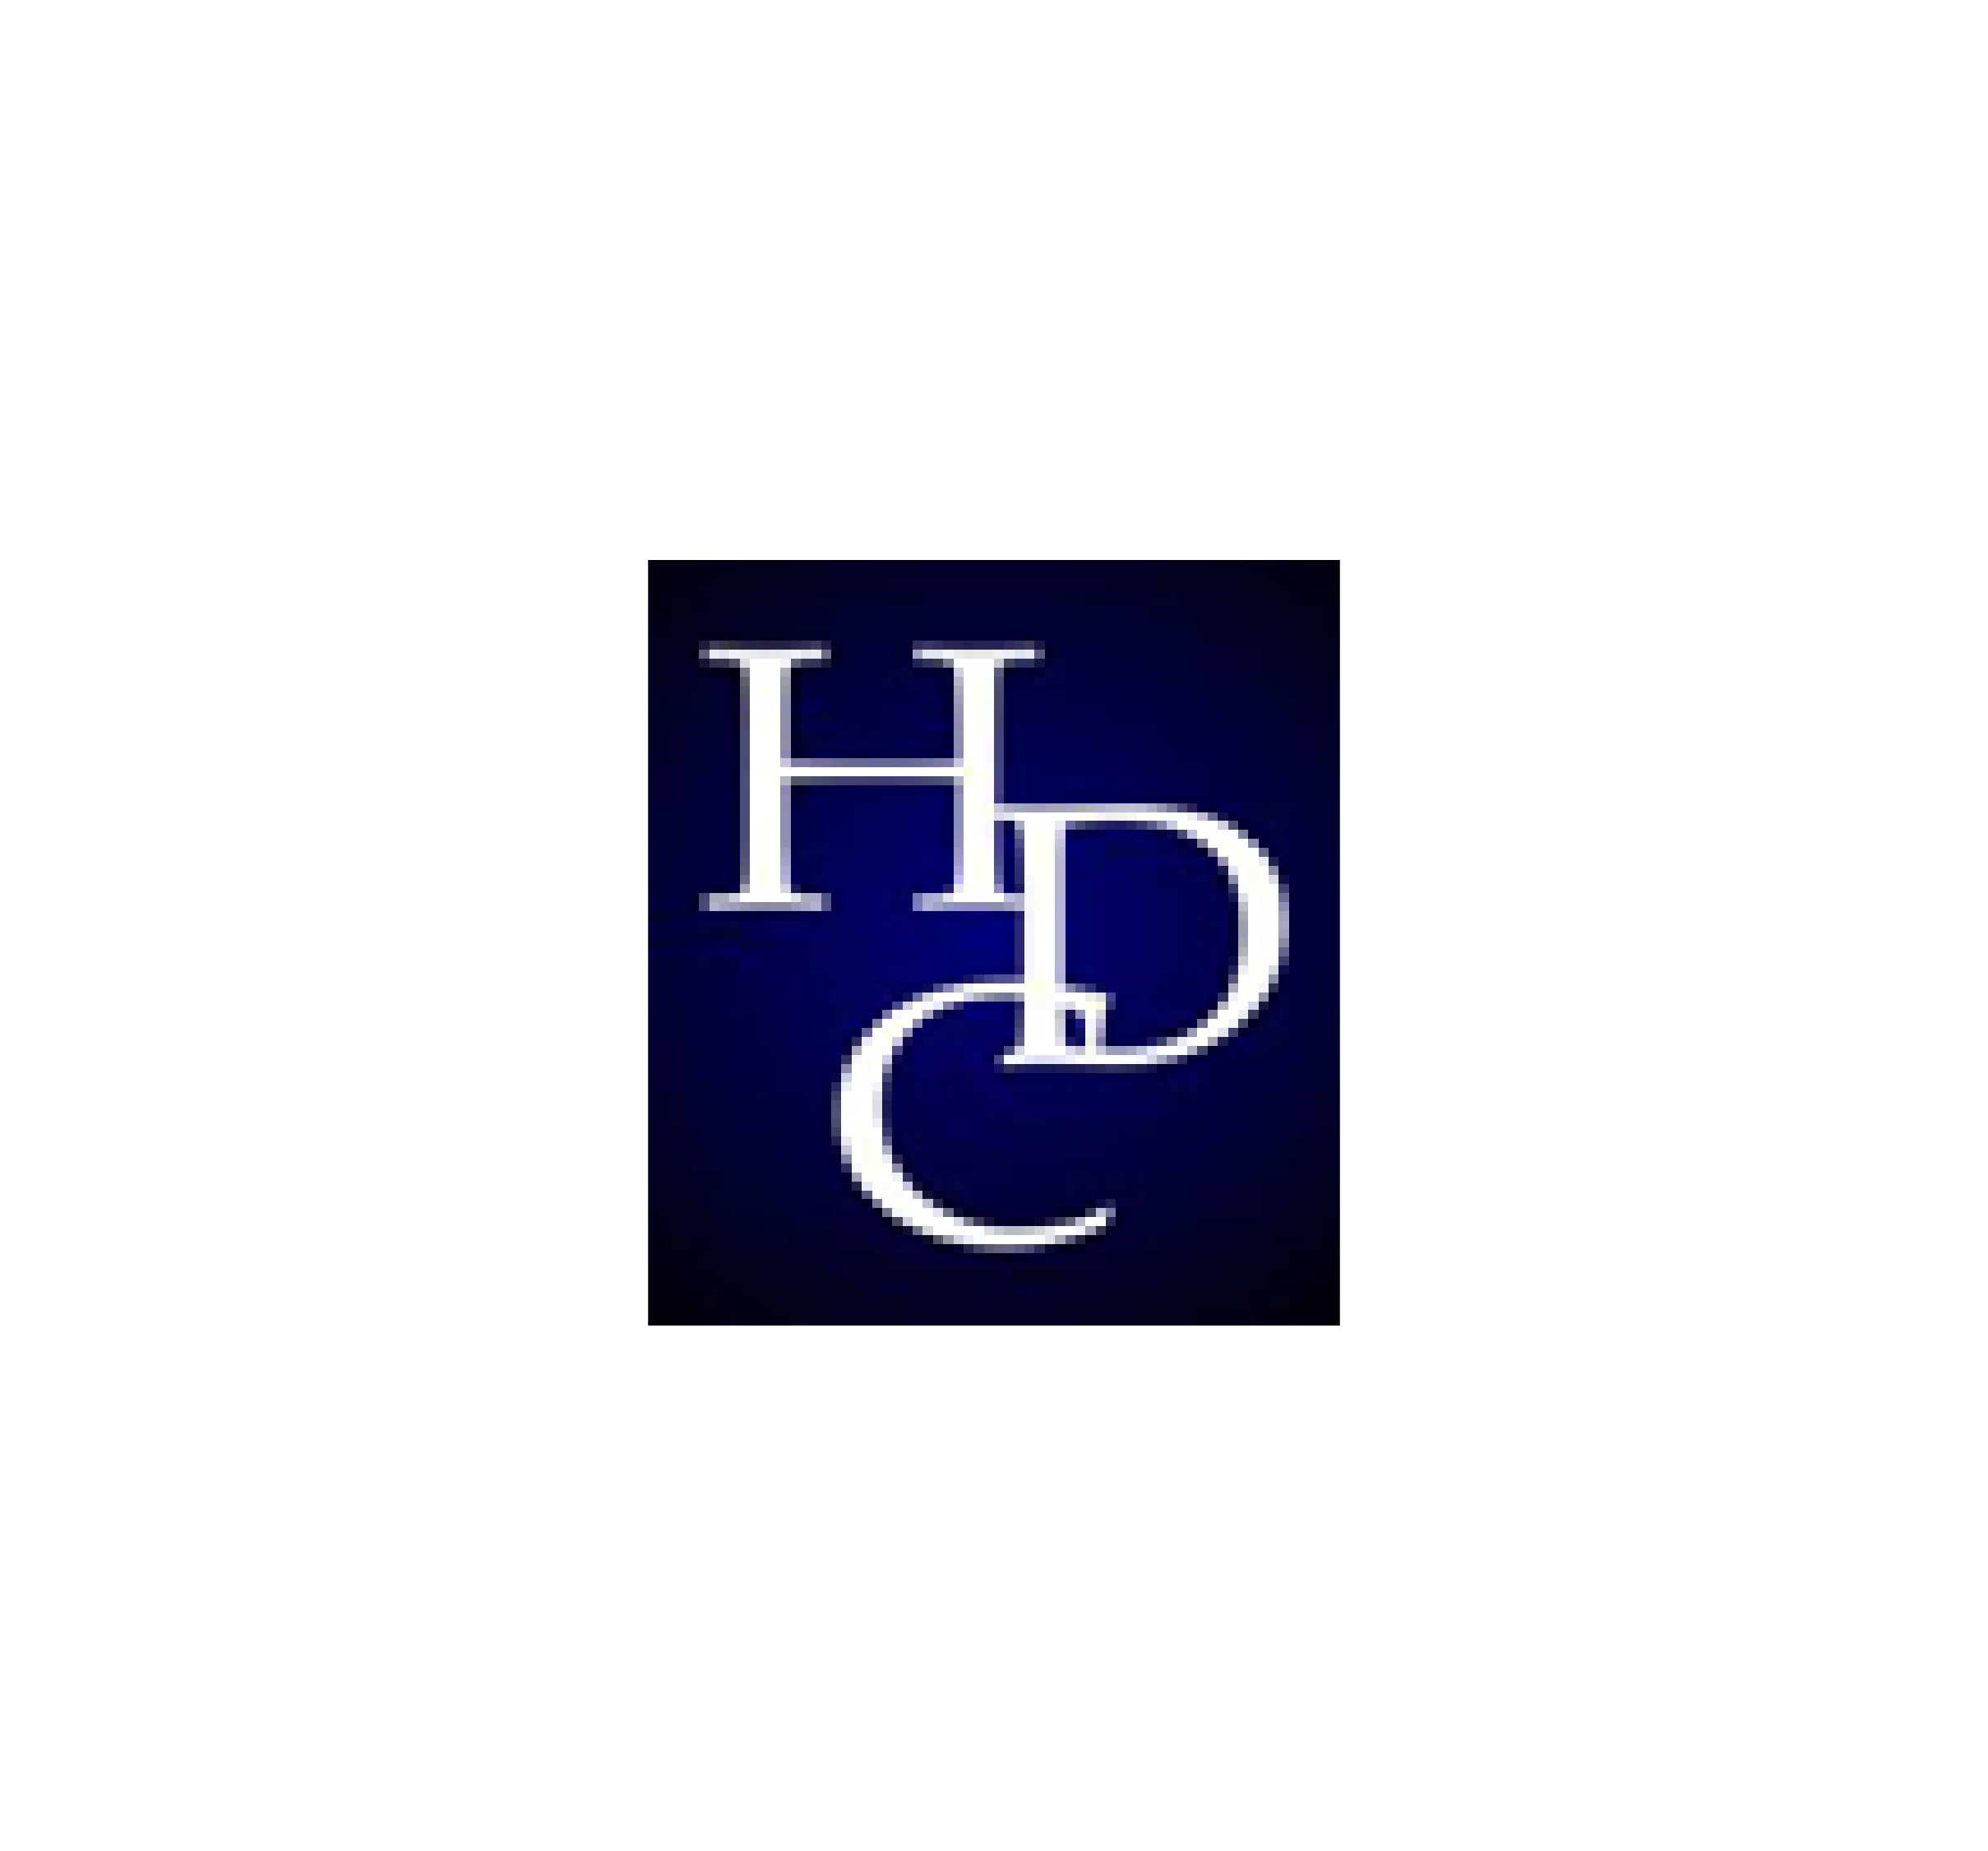 HDC Intellectual Property Law LLC